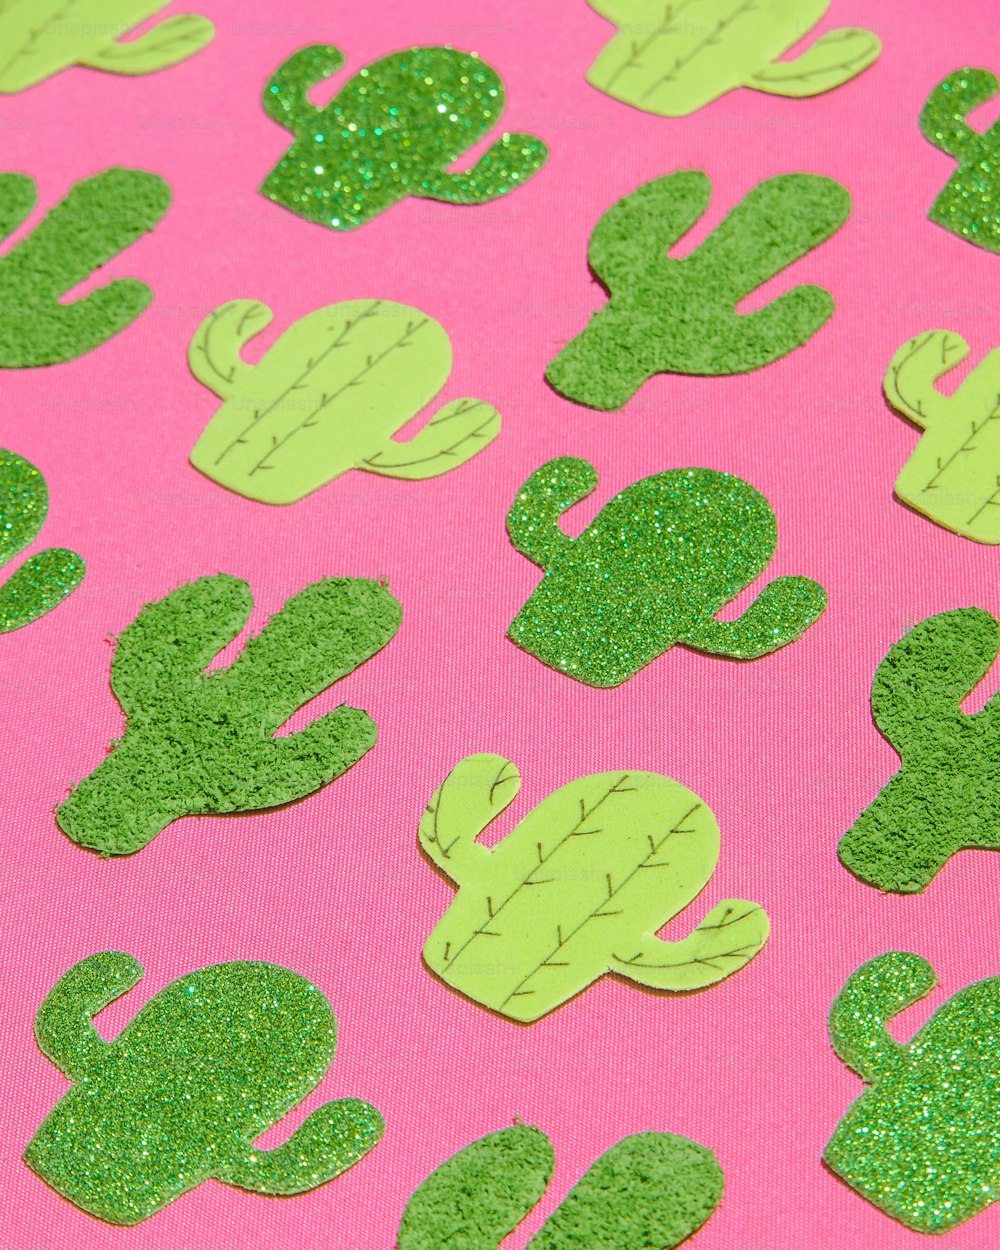 Un fondo rosa con formas de cactus verdes brillantes